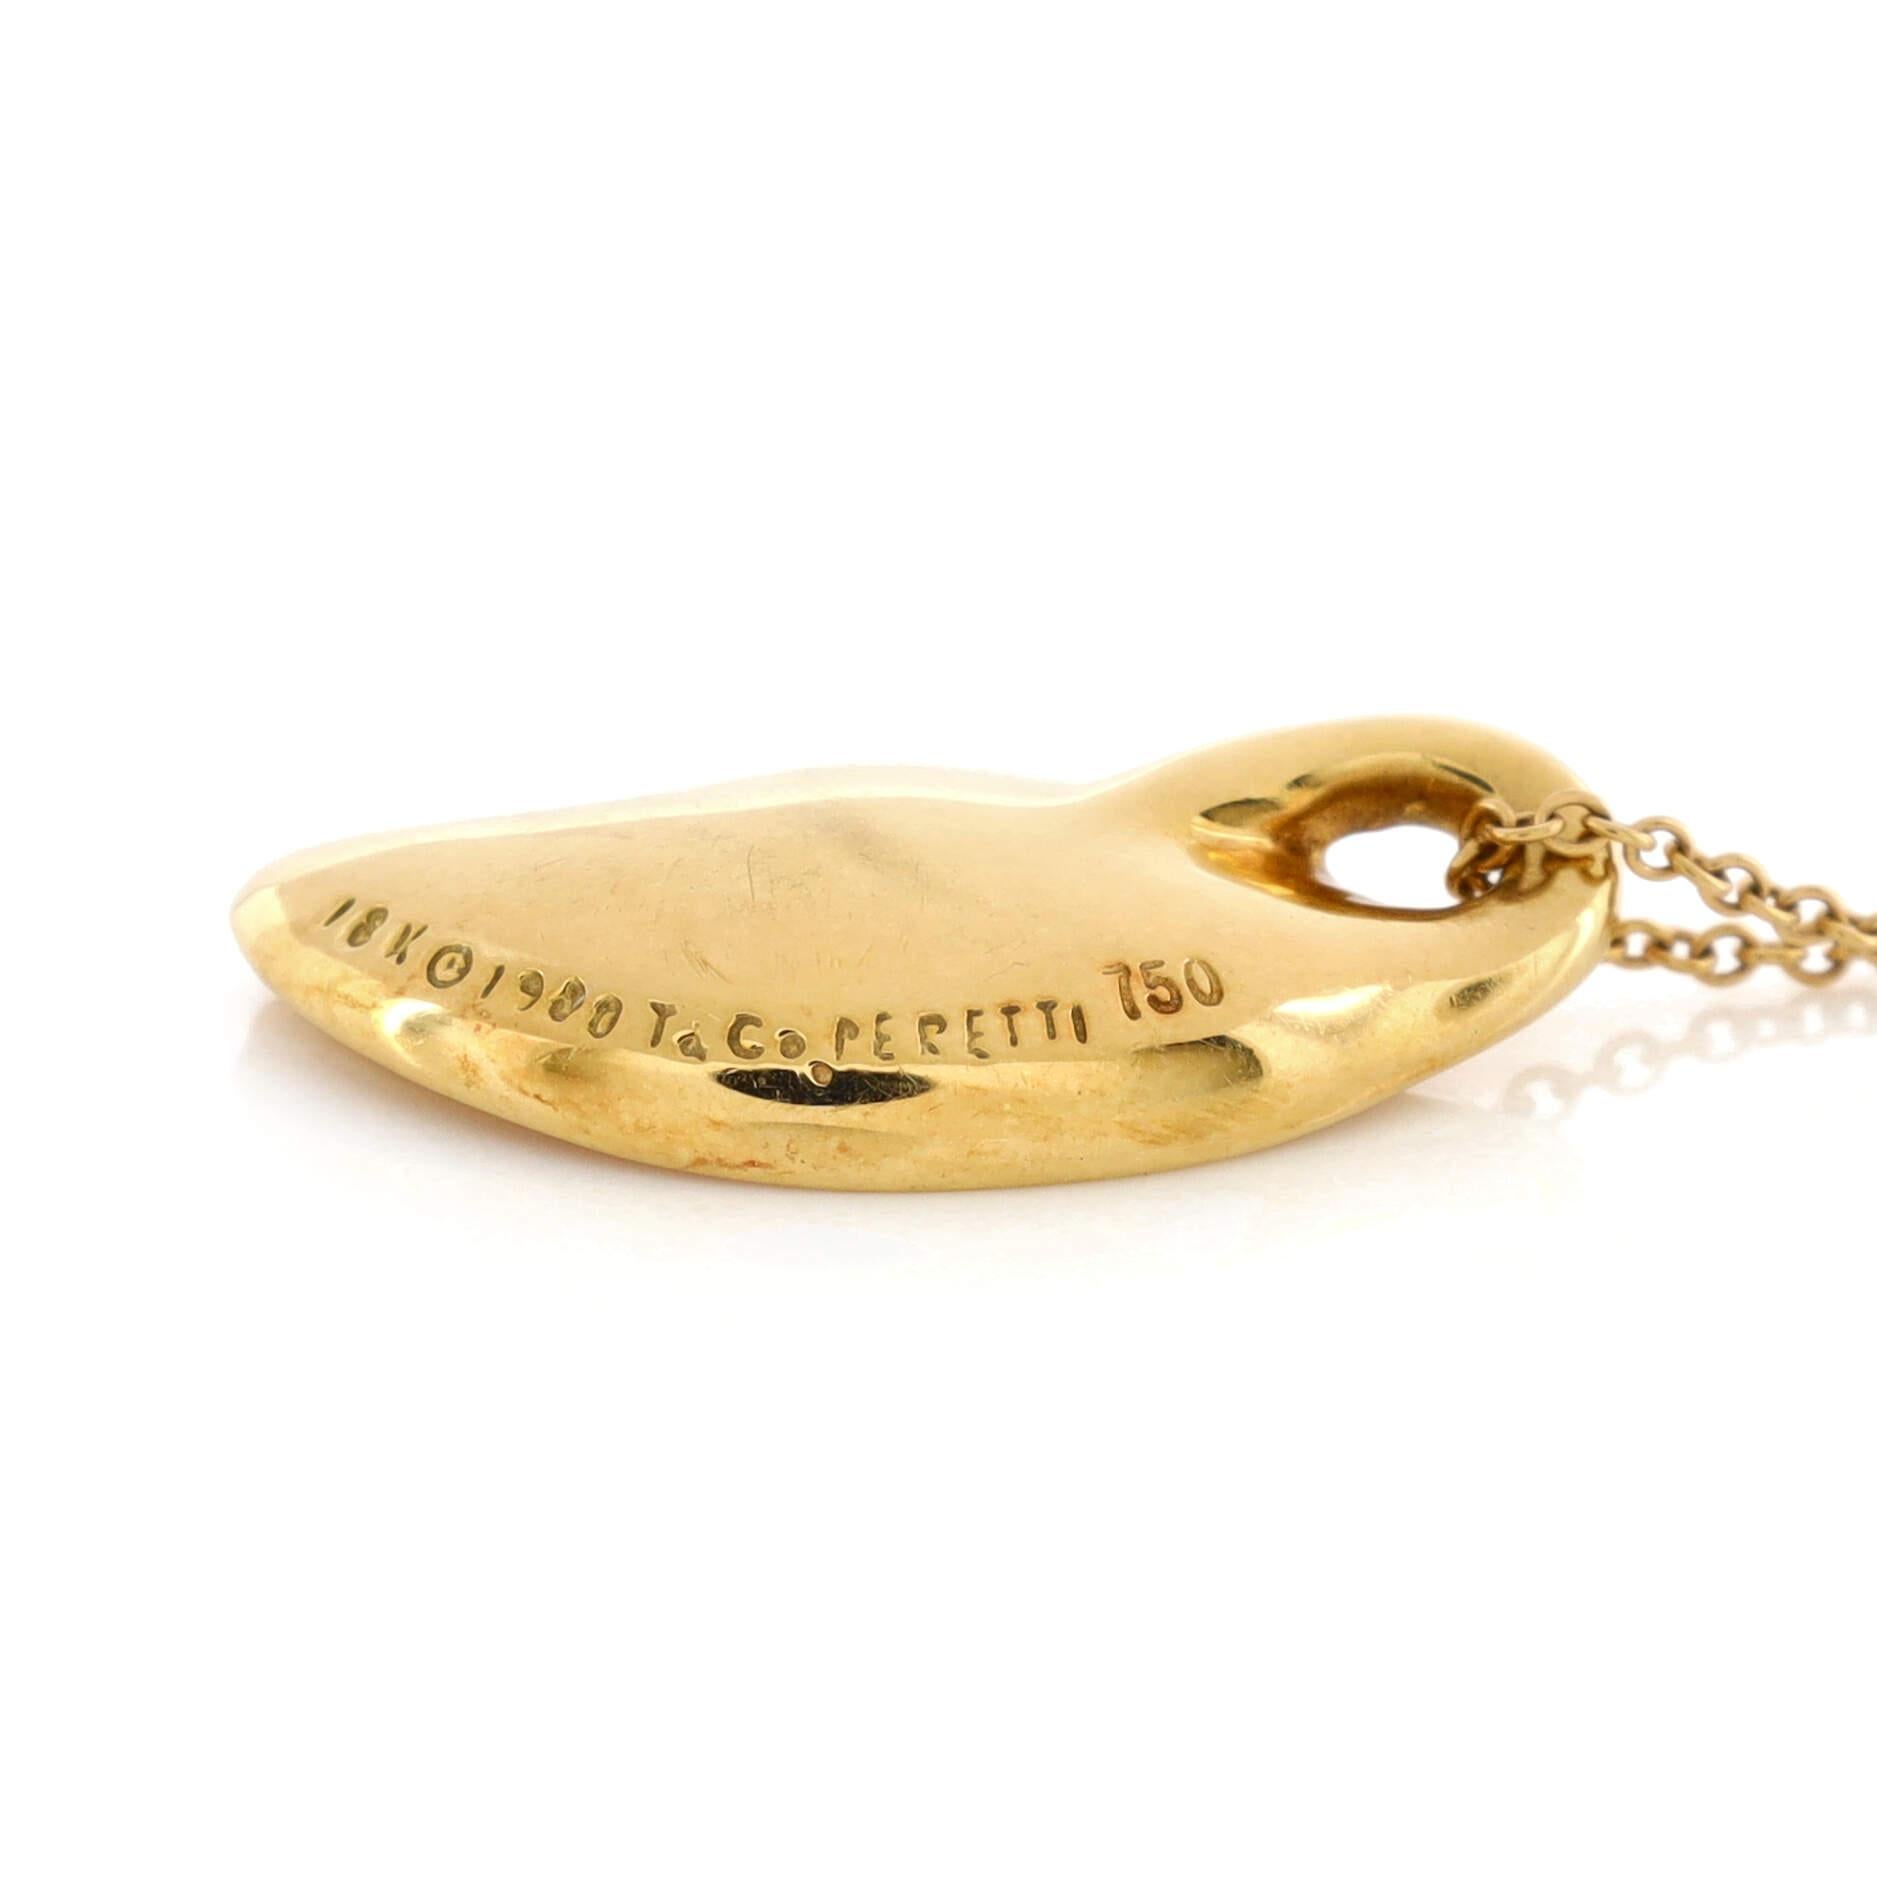 elsa gold pendant necklace